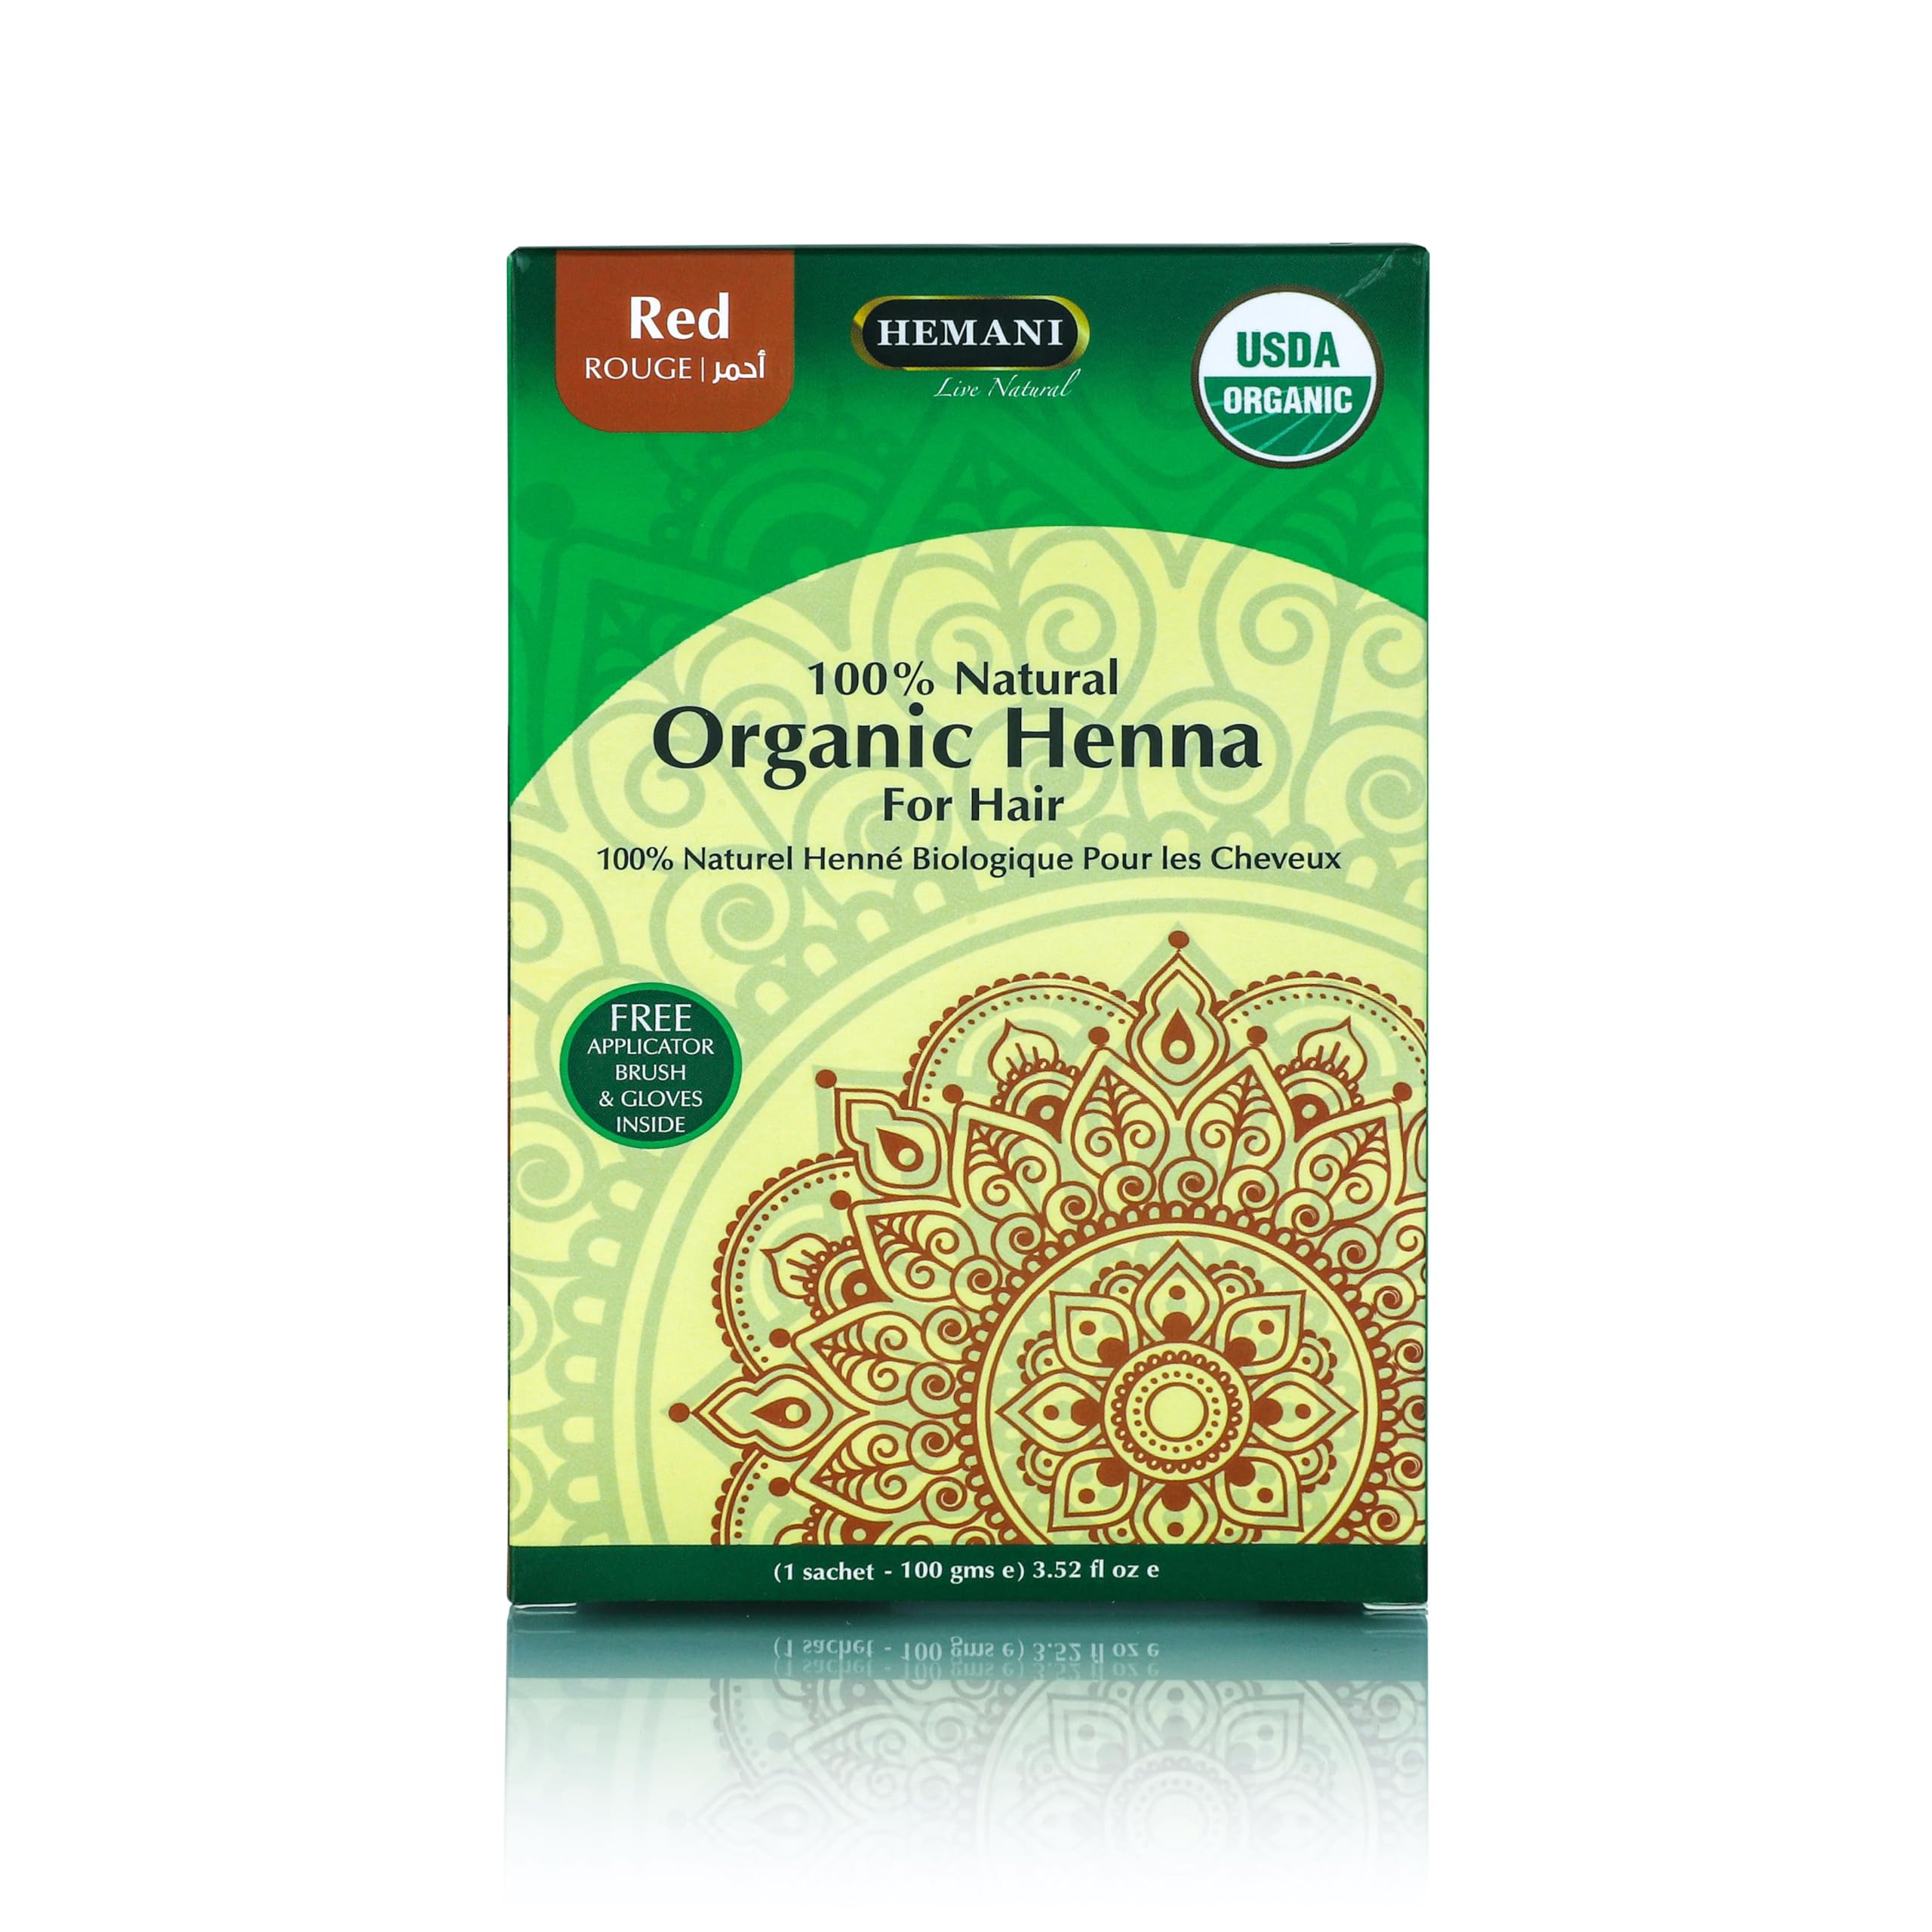 HEMANI Organic Henna Pwd Red 100g